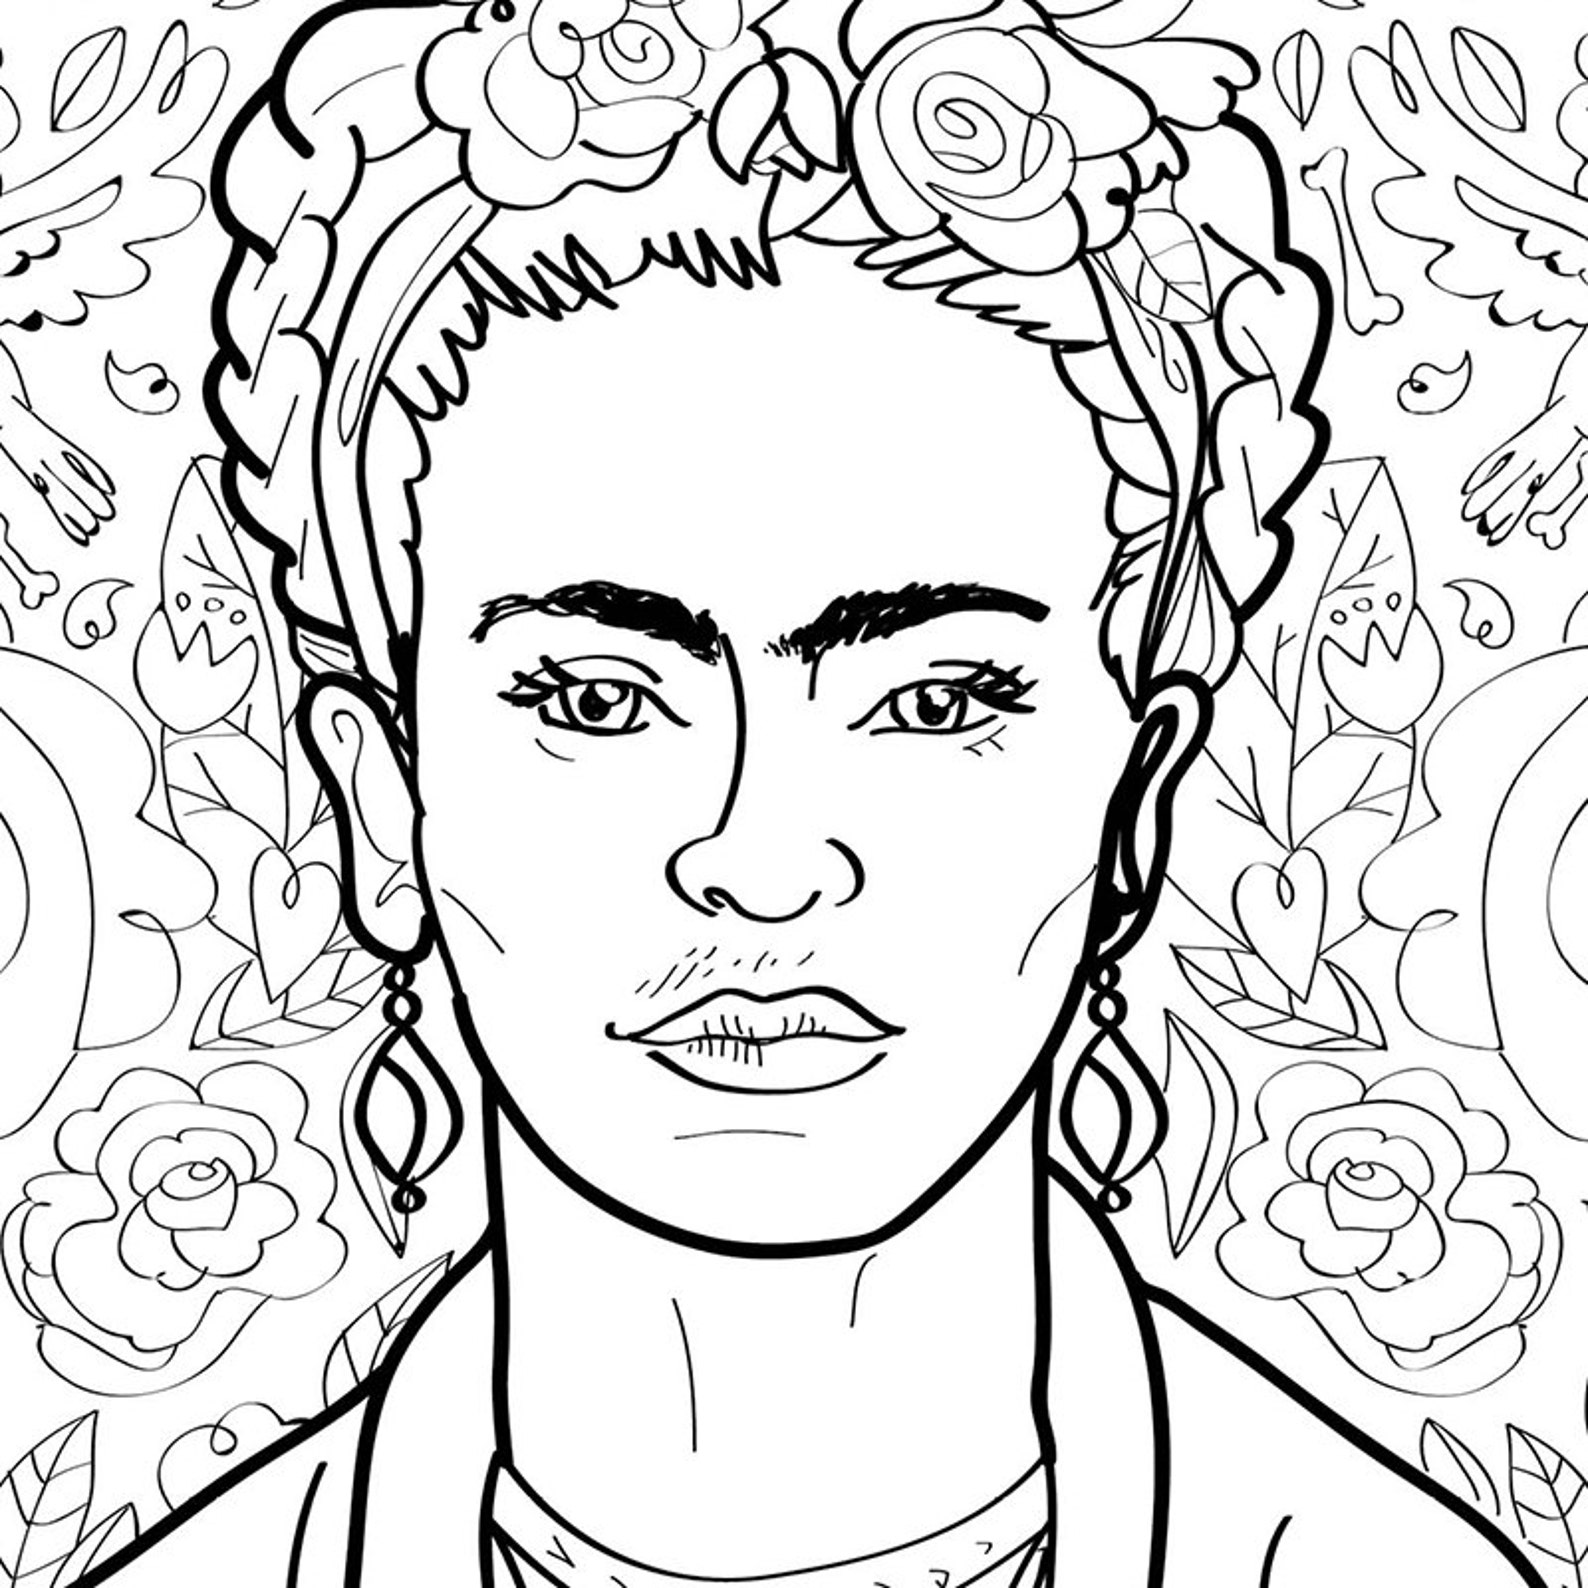 Frida Kahlo Art Print / Adult Coloring Sheet / Instant Download ...